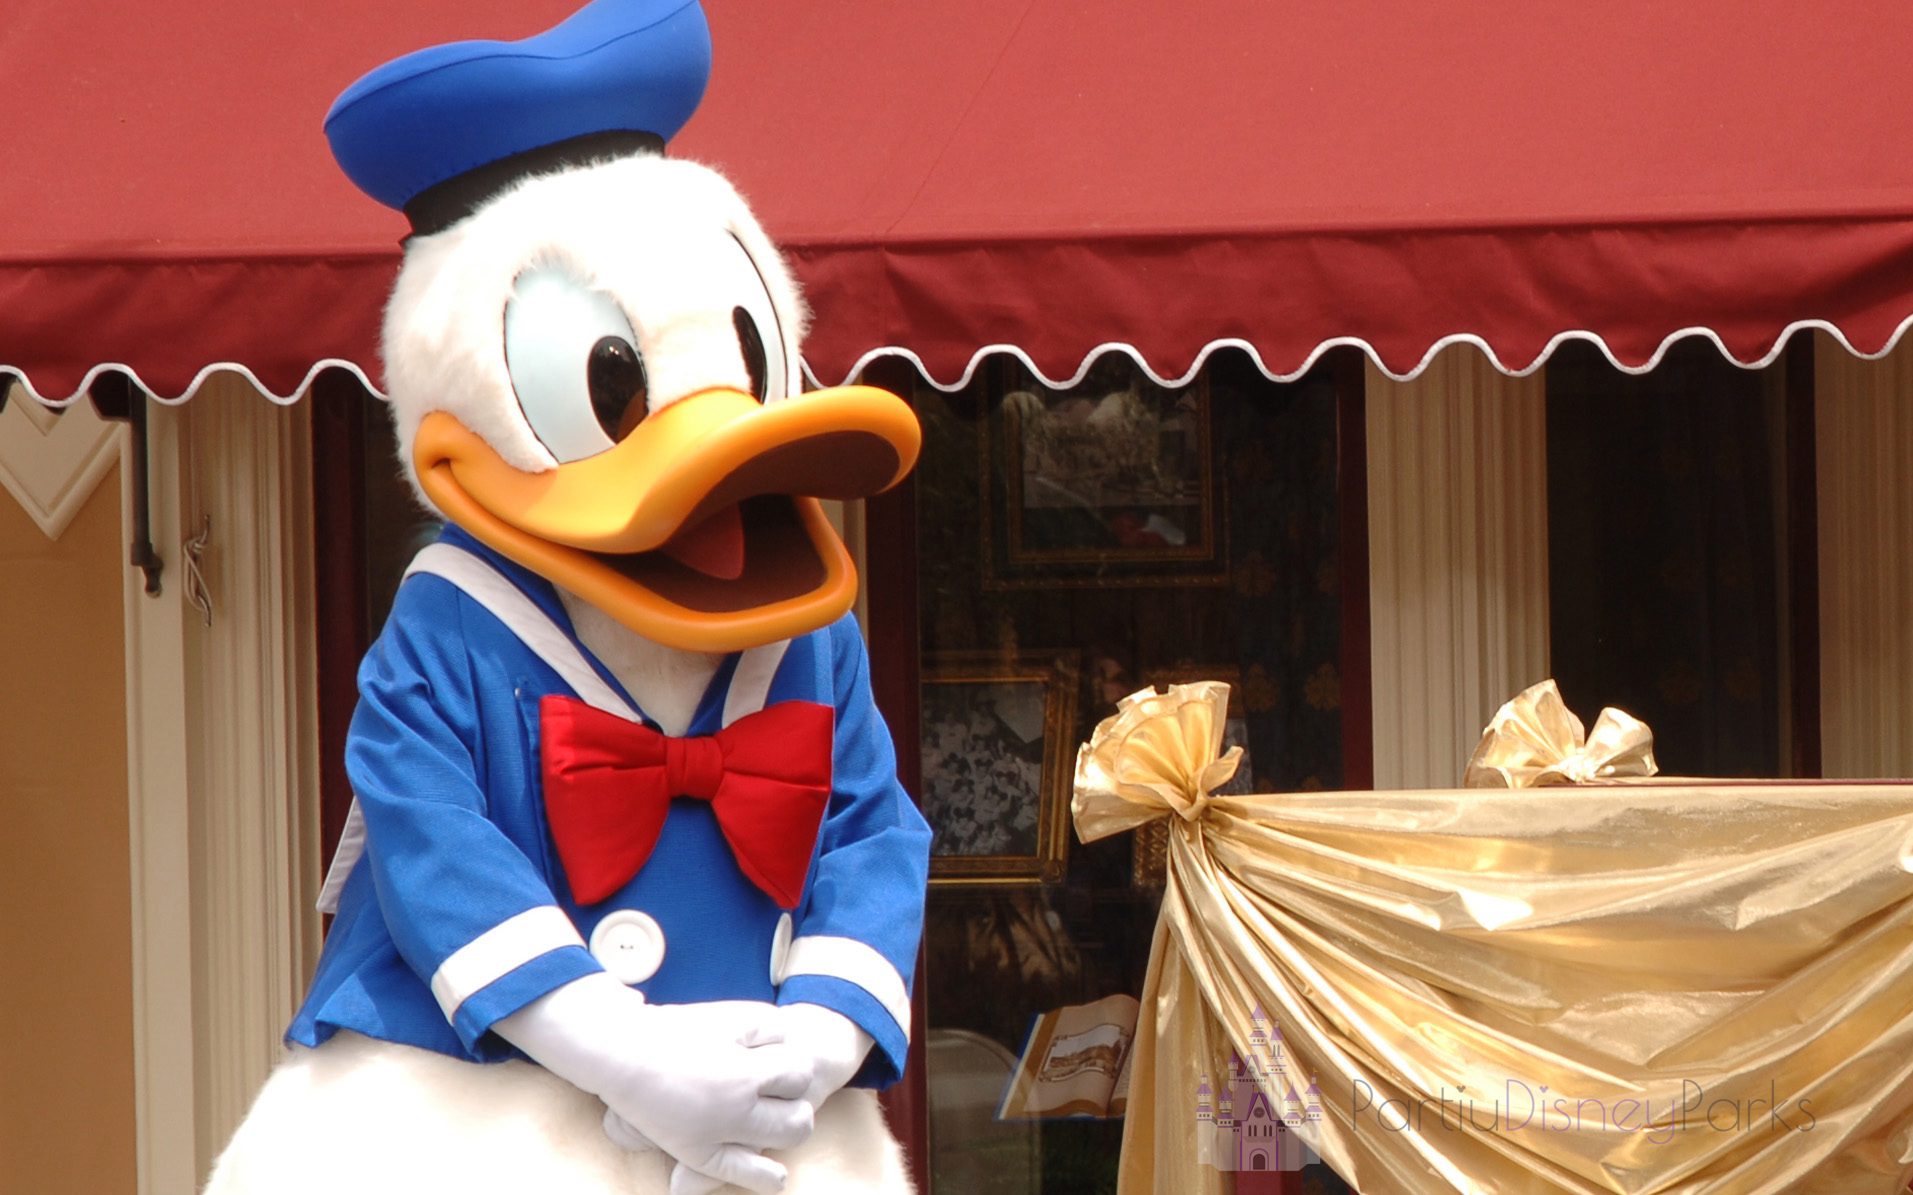 Unser Guide listet 8 Wege auf, wie Sie Donald Duck bei Disney finden